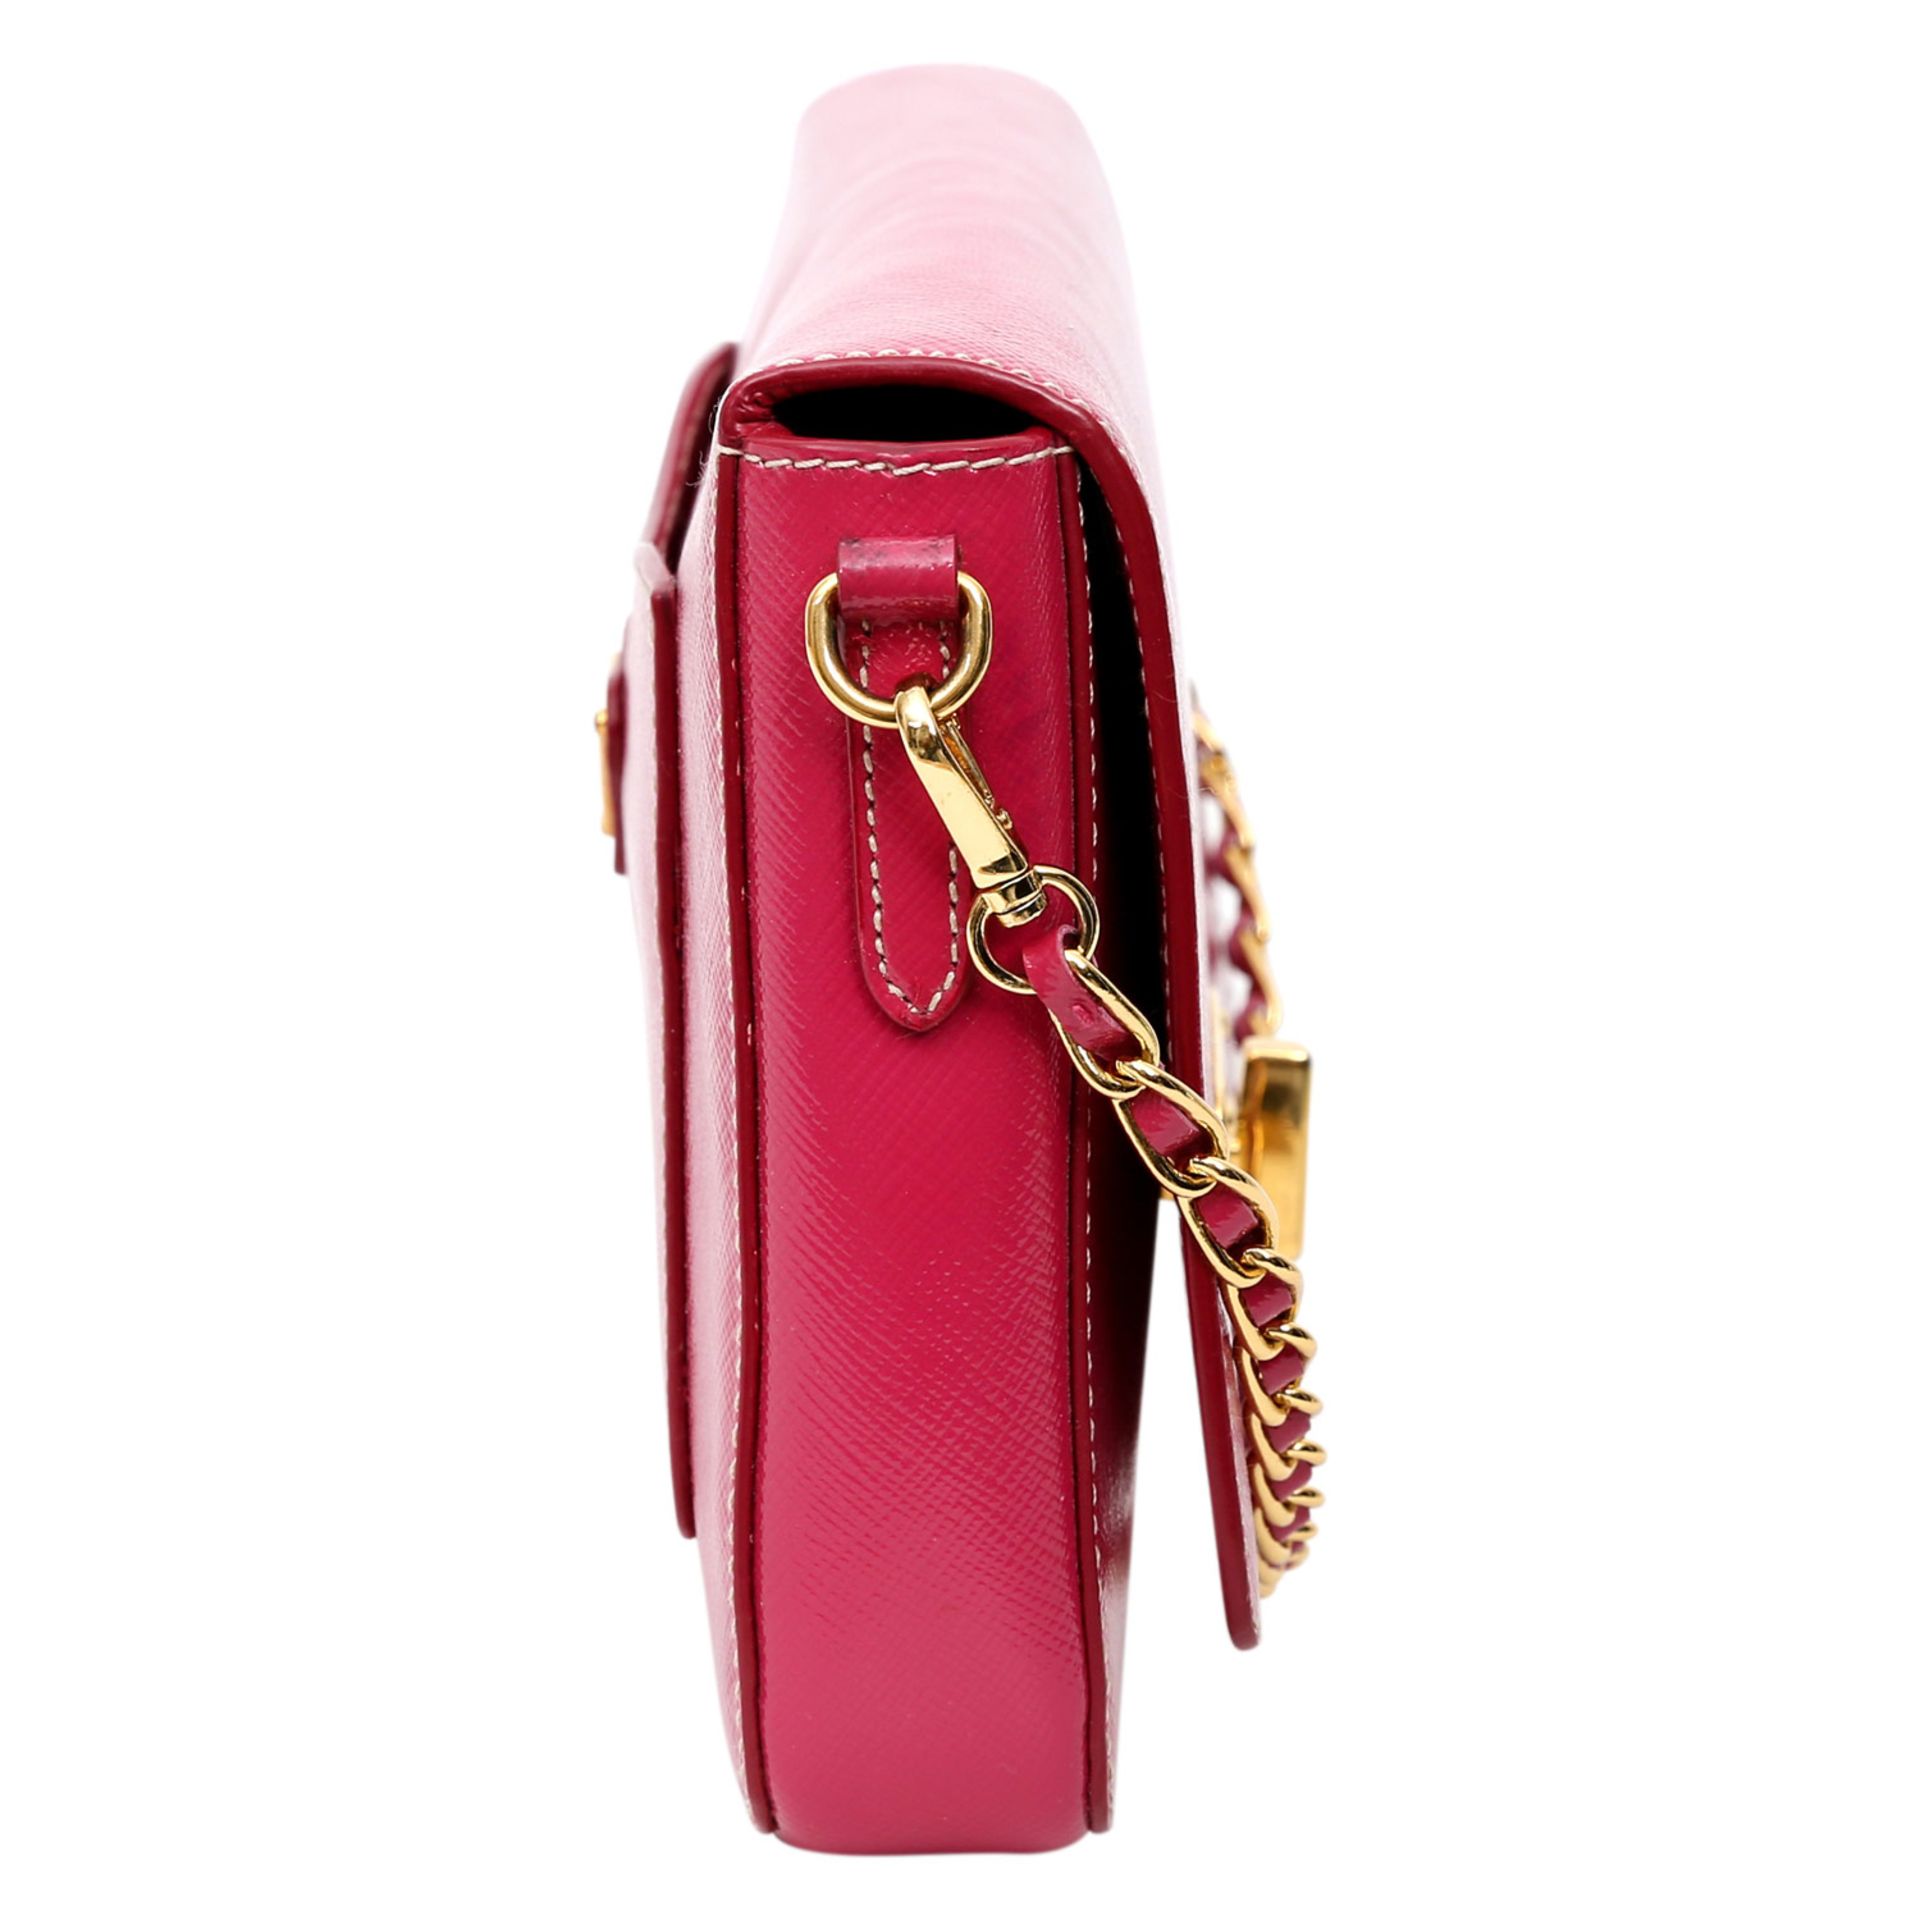 PRADA exklusive Umhängetasche. Saffiano-Lackleder in Pink mit goldfarbener Hardware, Überschlag - Bild 5 aus 14